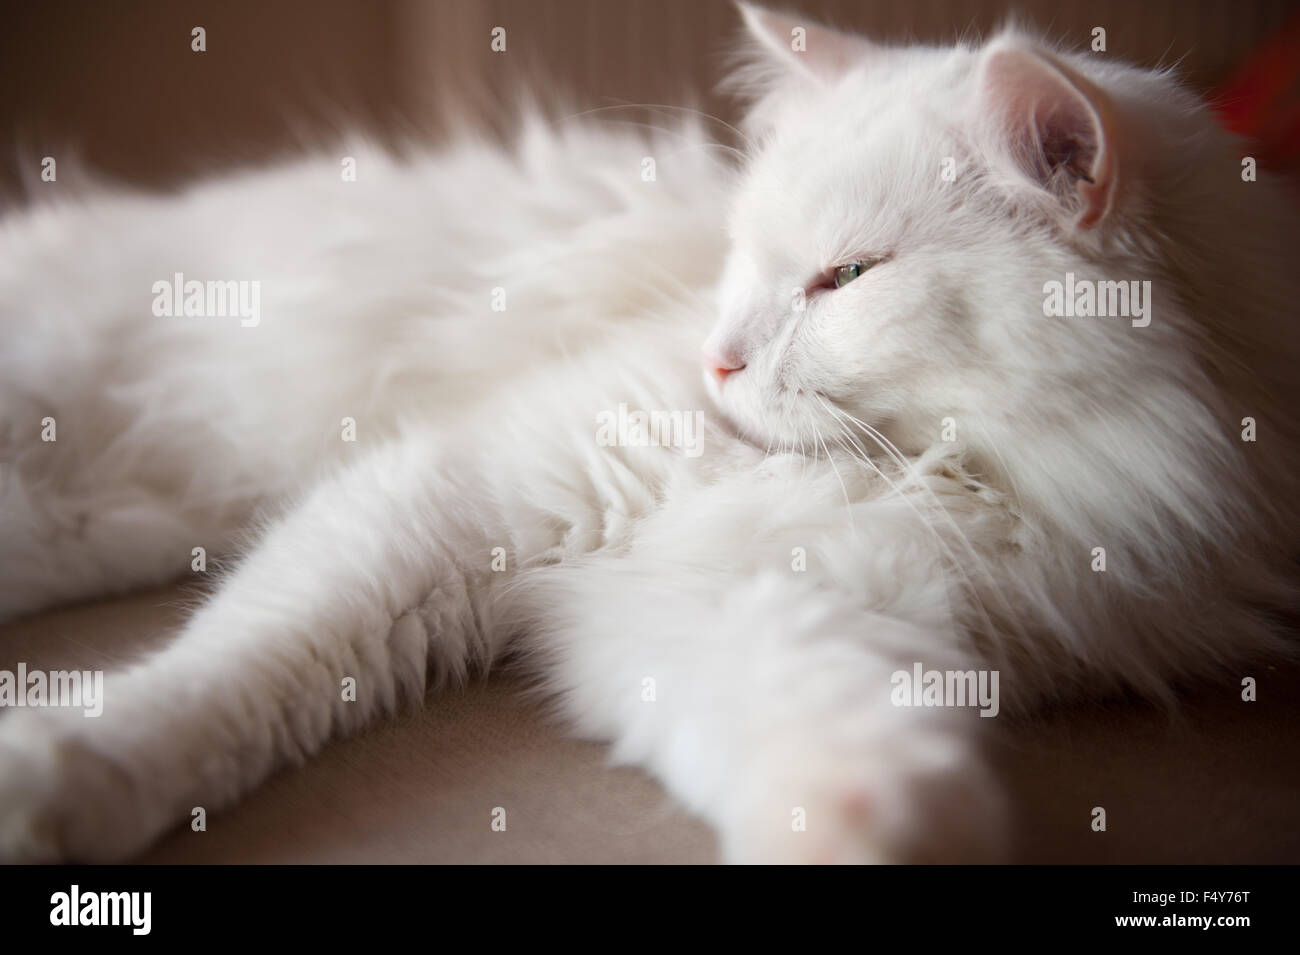 Angora turco sleepy cat, Ankara kedisi o Ankara gatto domestico bianco di razza capelli lunghi cat ritratto, animale che giace in posizione orizzontale Foto Stock